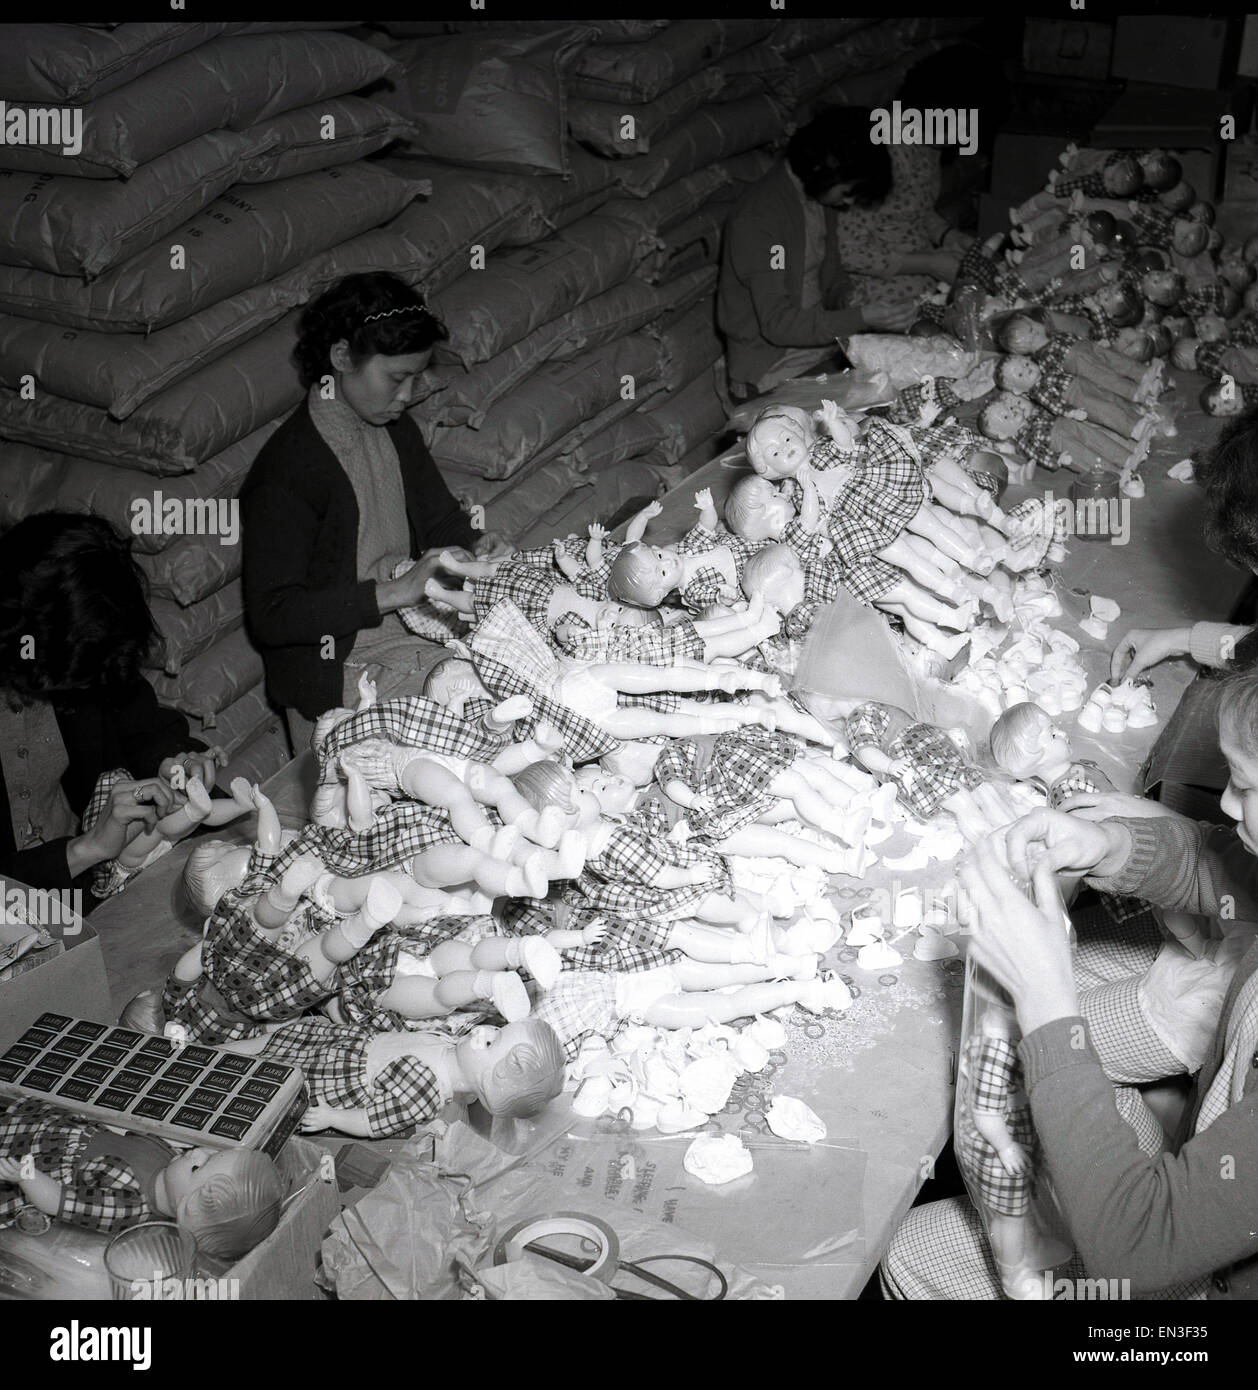 In den 1950er Jahren, historisch, hongkong, chinesische Arbeiterinnen in einer Fabrikeinheit, die sich aufmachen und Plastikspielzeugpuppen zusammenstellen. Es war nicht lange nach dem Ende des 2. Weltkriegs, dass harter Kunststoff das Material für Puppenmacher wurde, da er langlebig war und geformt werden konnte. In den 50er und 60er Jahren wurde Hongkong bald zum Epizentrum der Spielzeugproduktion, mit Tausenden von kleinen Produktions- und Produktionseinheiten, wie sie hier zu sehen sind, in Kellern und oberen Etagen von Gebäuden. Stockfoto